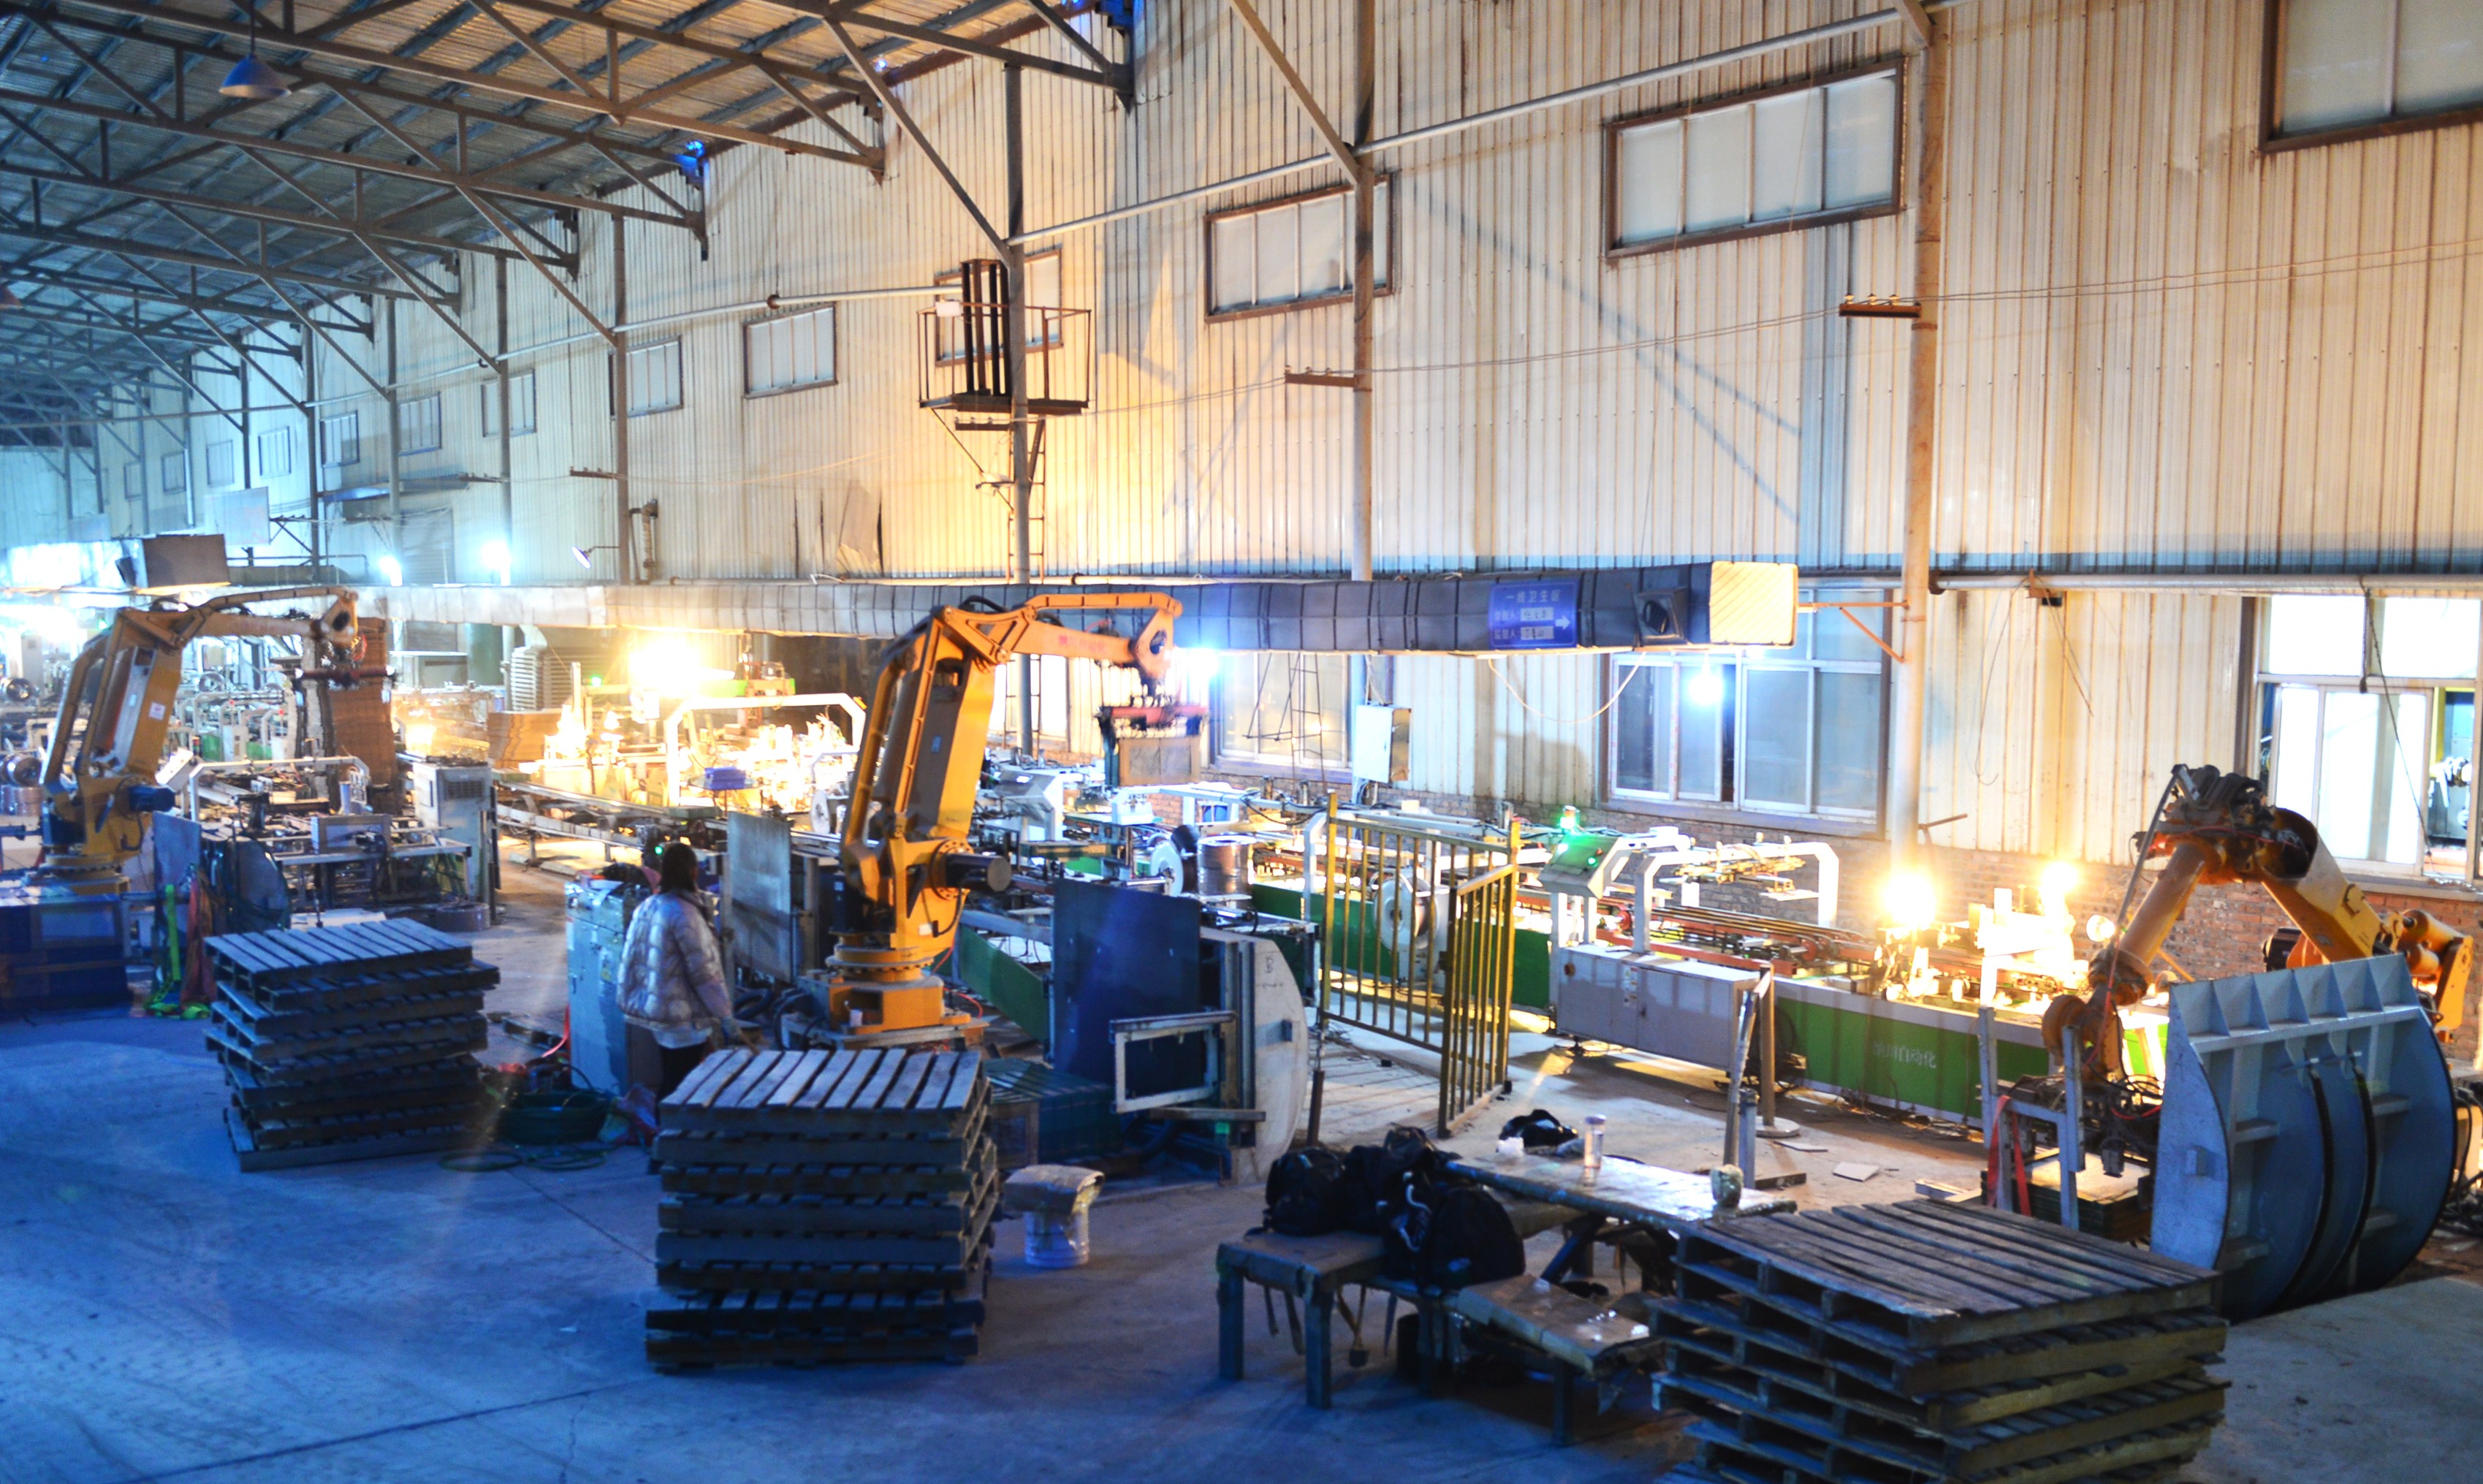 河南中祺陶瓷有限公司生产车间一片繁忙景象。